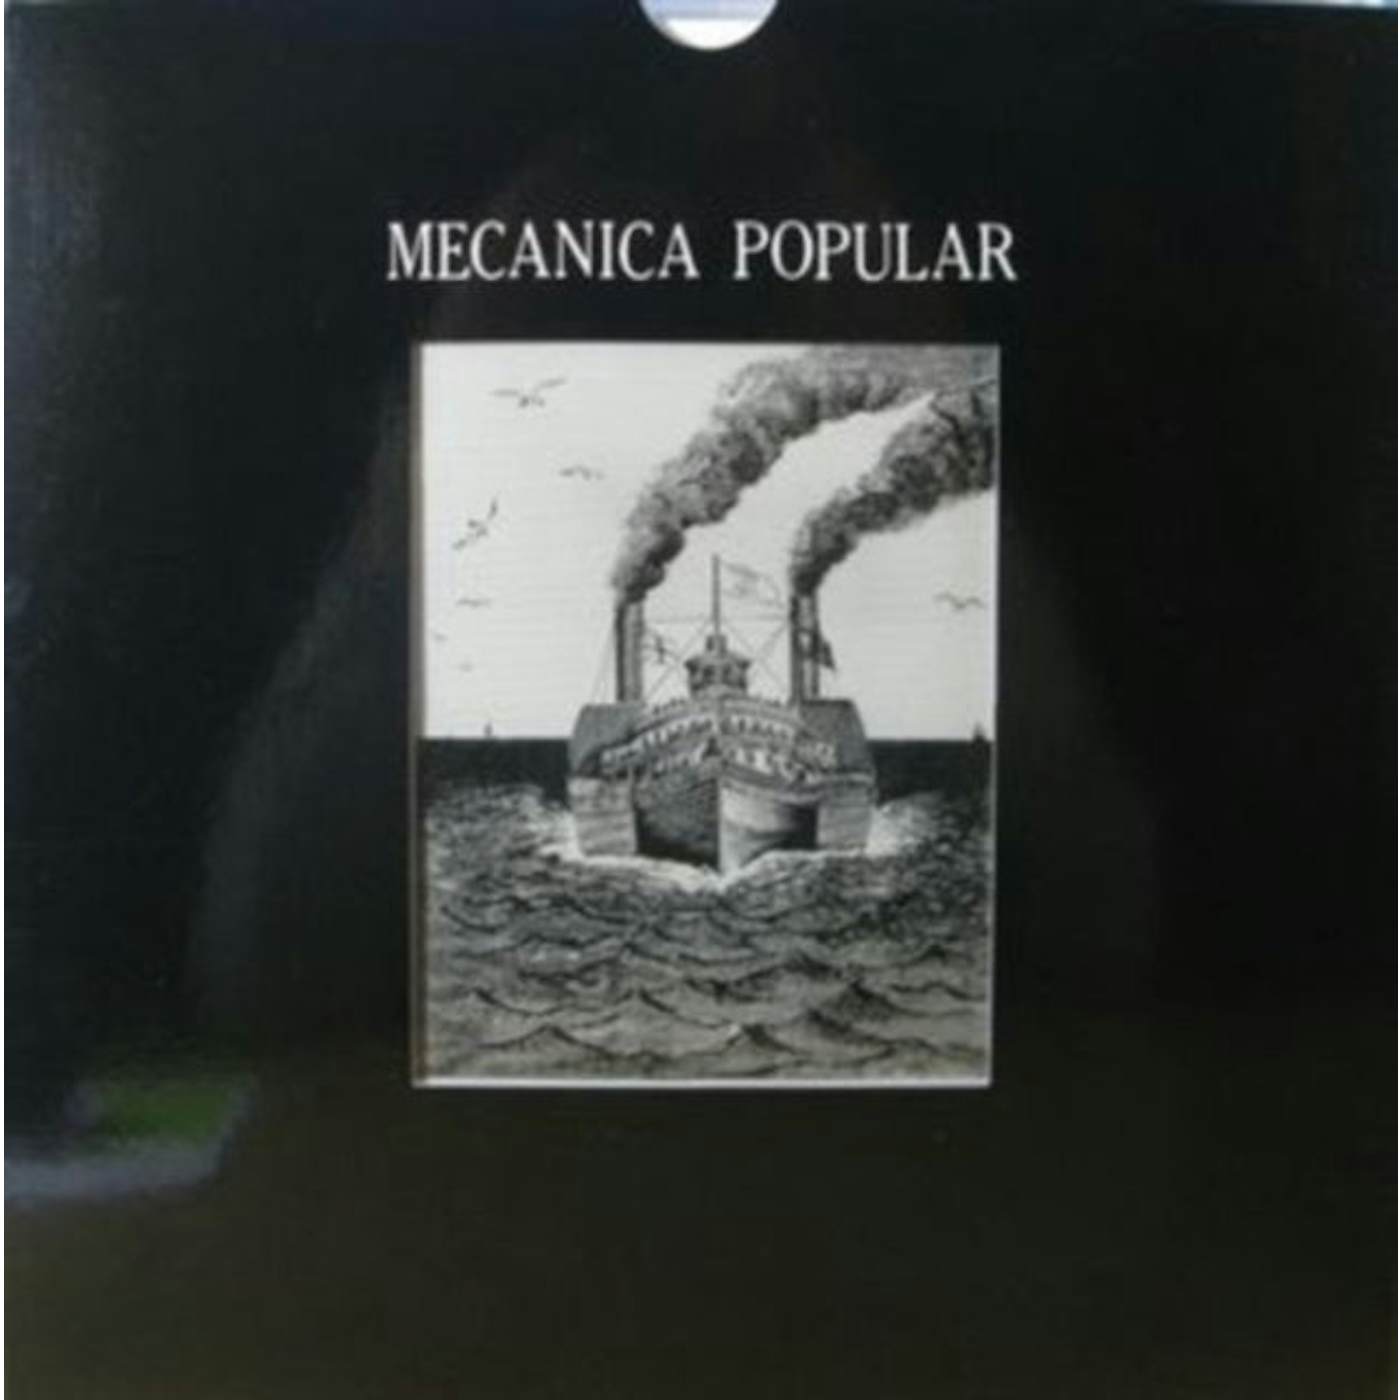 Mecanica Popular LP - Que Sucede Con El Tiempo? (Vinyl)